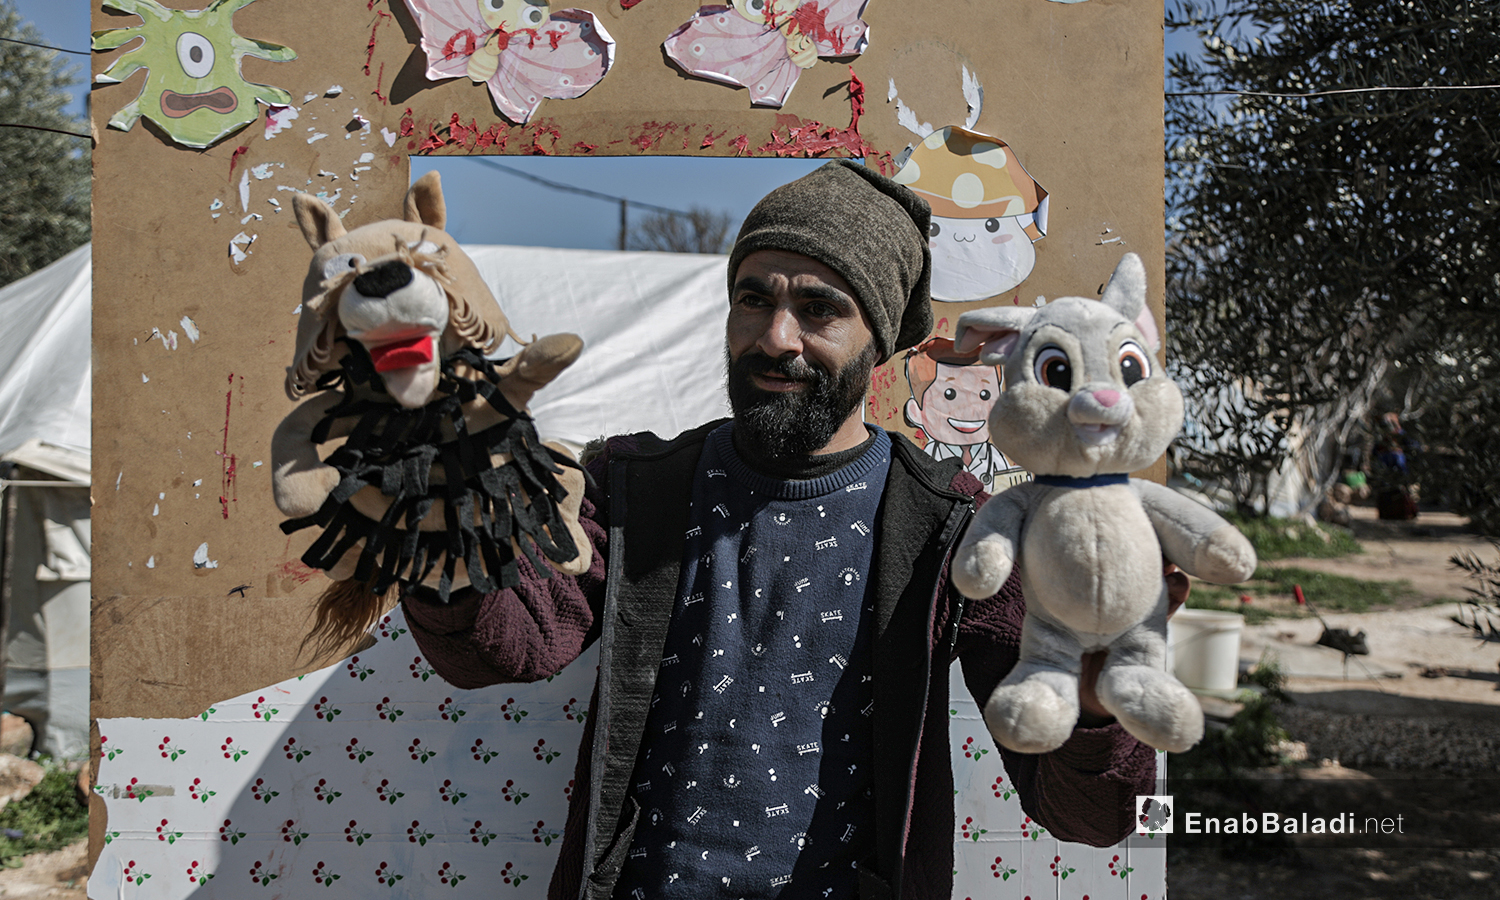 عرض مسرحي للدمى المتحركة قدمته فرقة الحارة المسرحية في إحدى مخيمات النازحين قرب مدينة إدلب 28 آذار 2021 (عنب بلدي/ تصوير يوسف غريبي).
